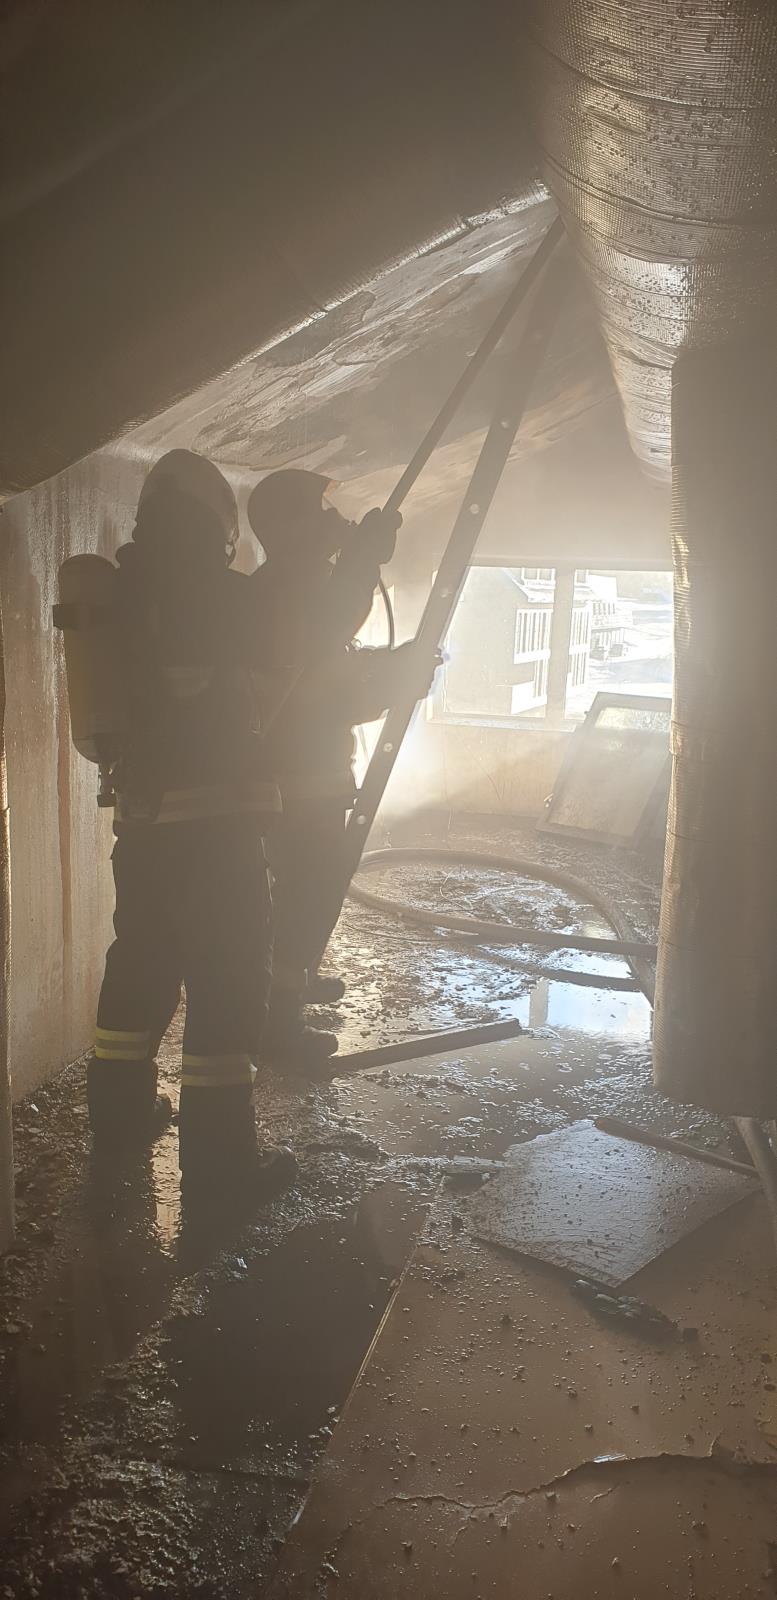 LIK_Požár rekreačního objektu na Semilsku_2 hasiči při průzkumu uvnitř budovy.jpg